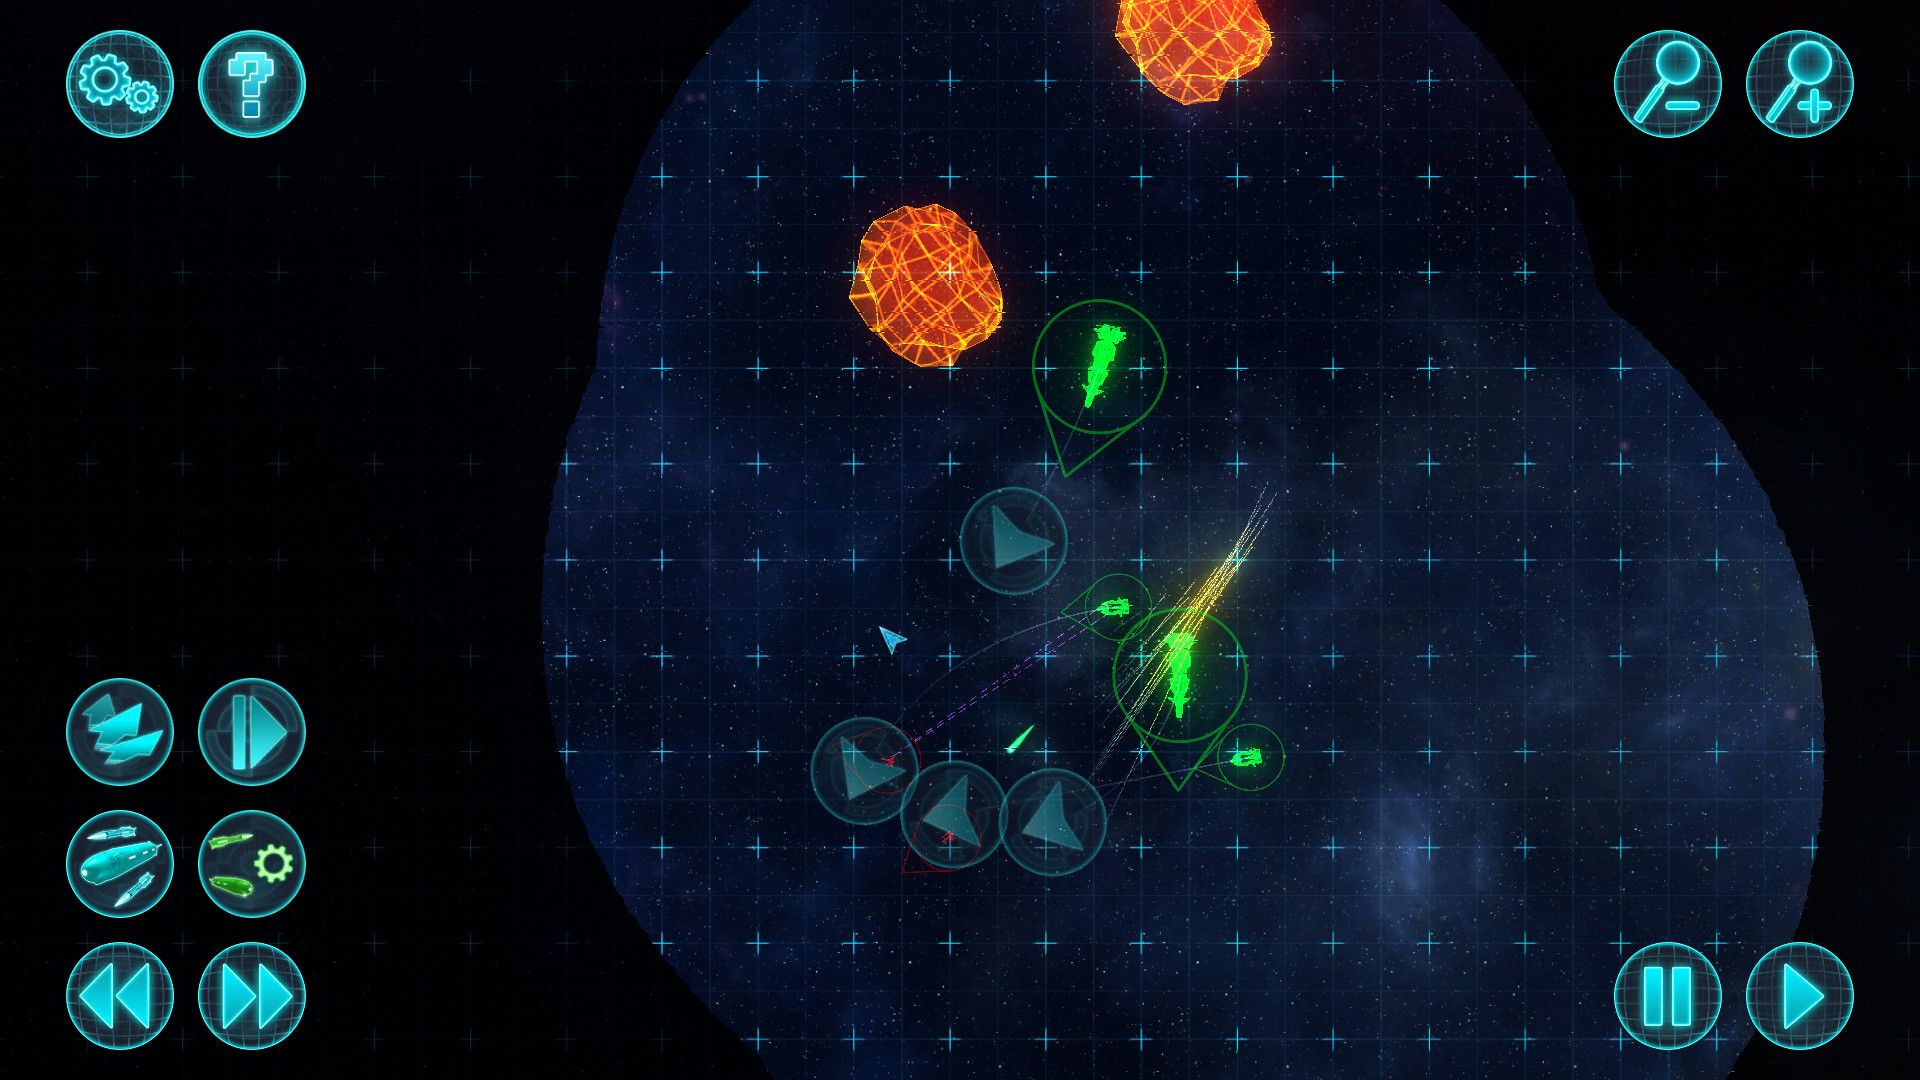 Star Tactics Redux - Expeditions screenshot